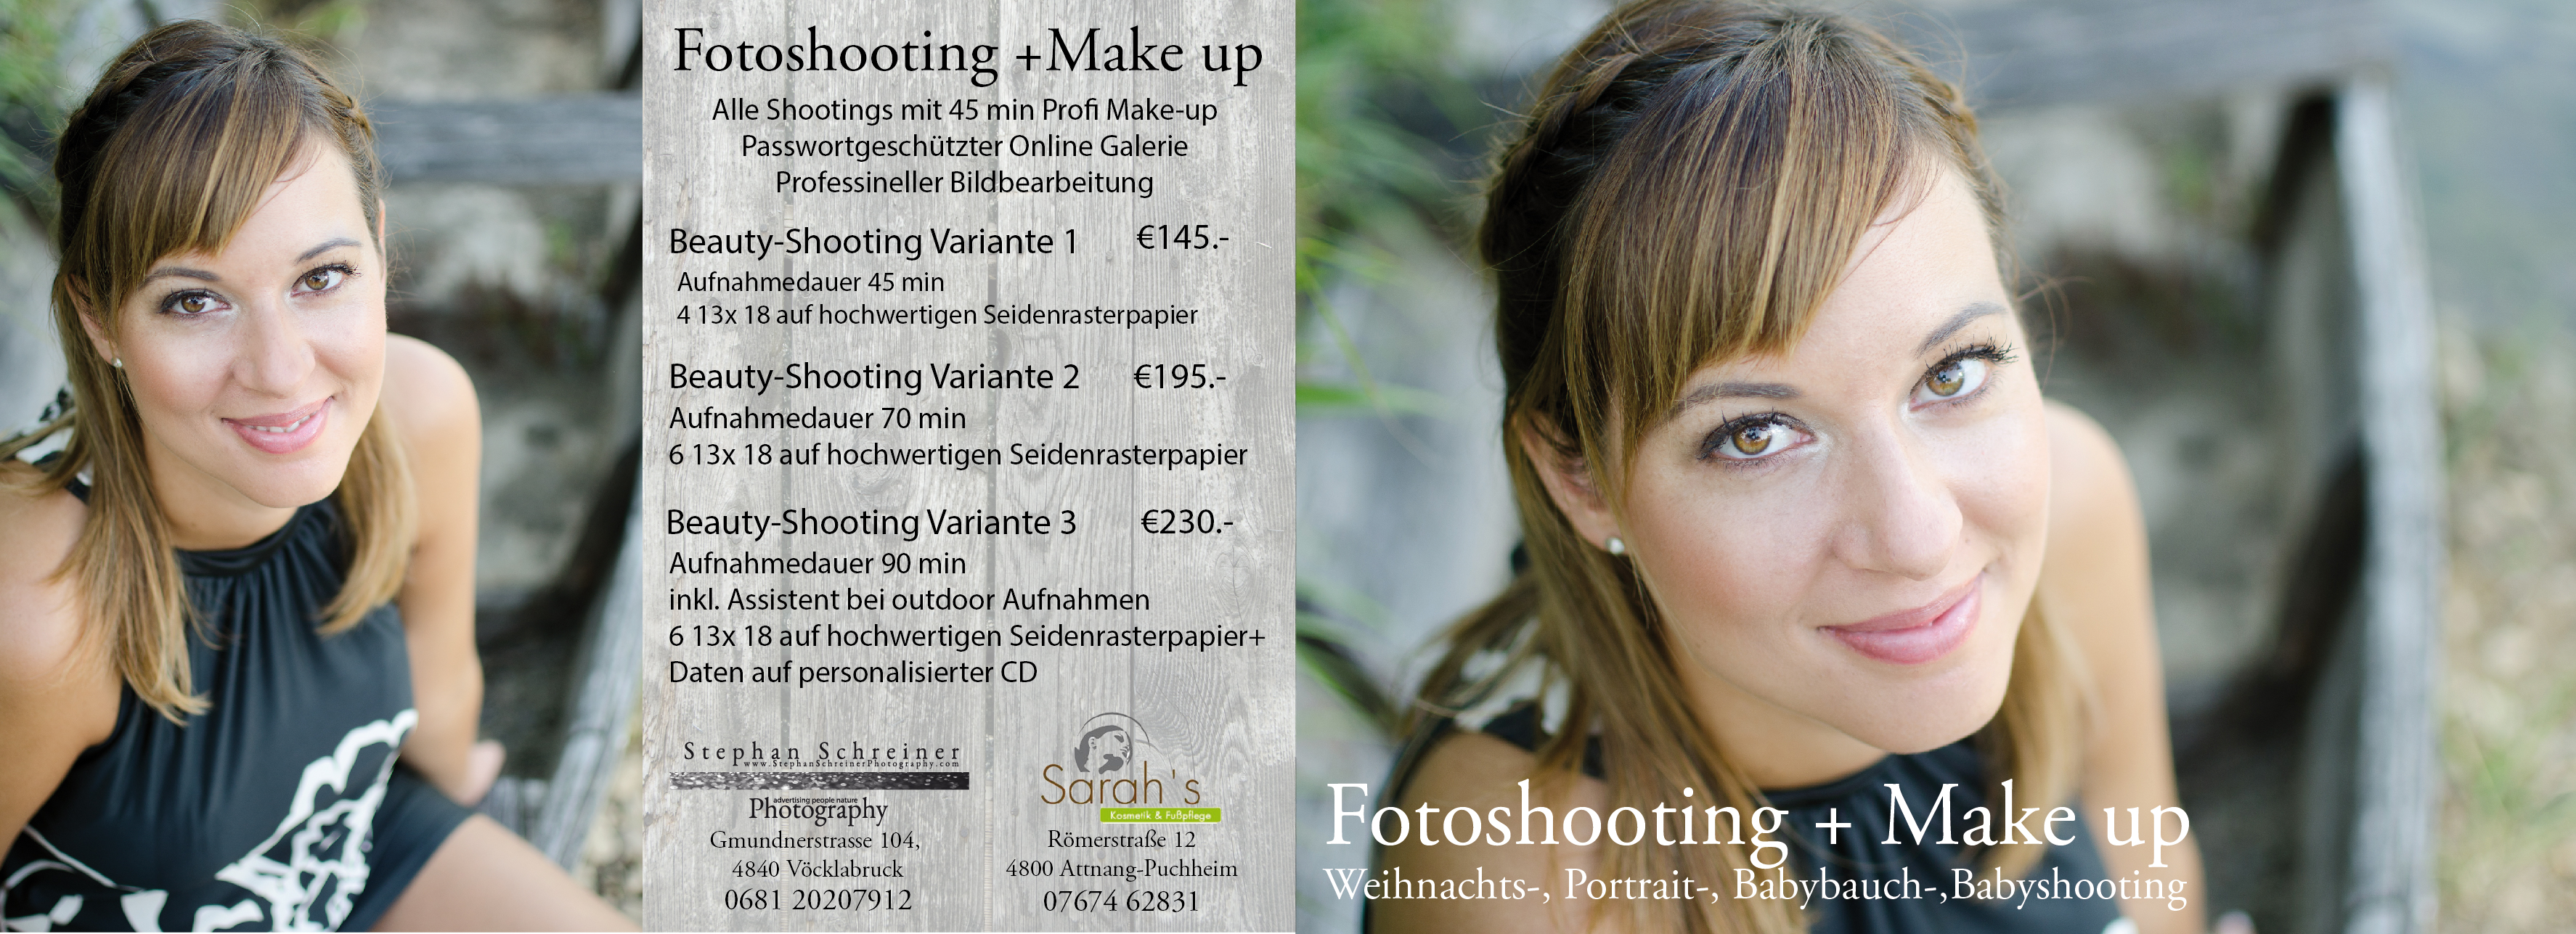 Fotoshooting_make_up-01